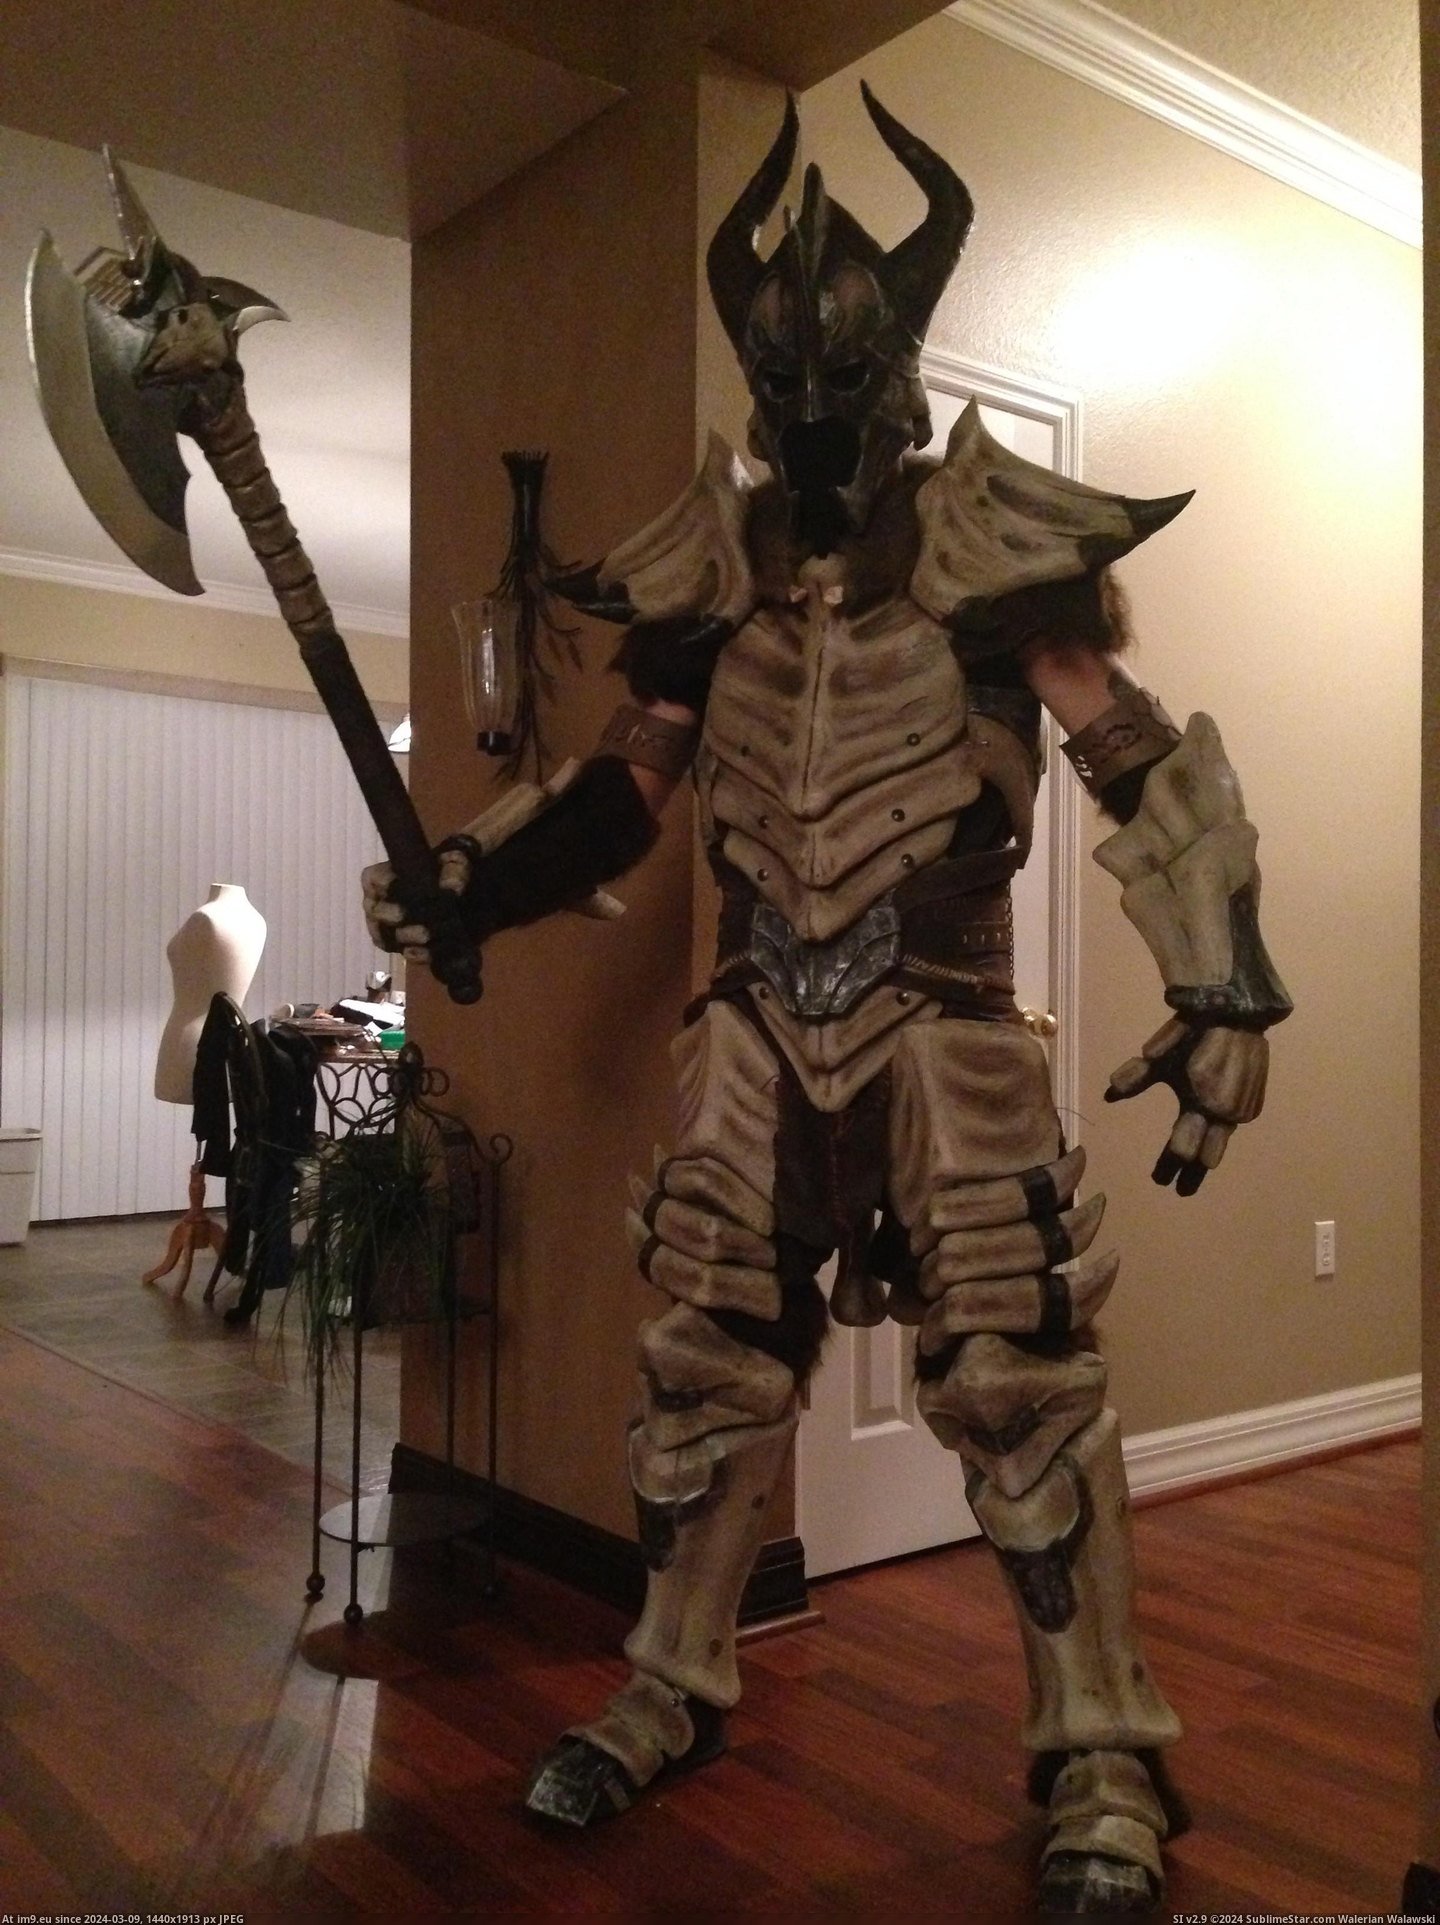 #Gaming #How #Dragonbone #Skyrim #Armor [Gaming] [Self] Skyrim Dragonbone Armor - How I made it 17 Pic. (Obraz z album My r/GAMING favs))